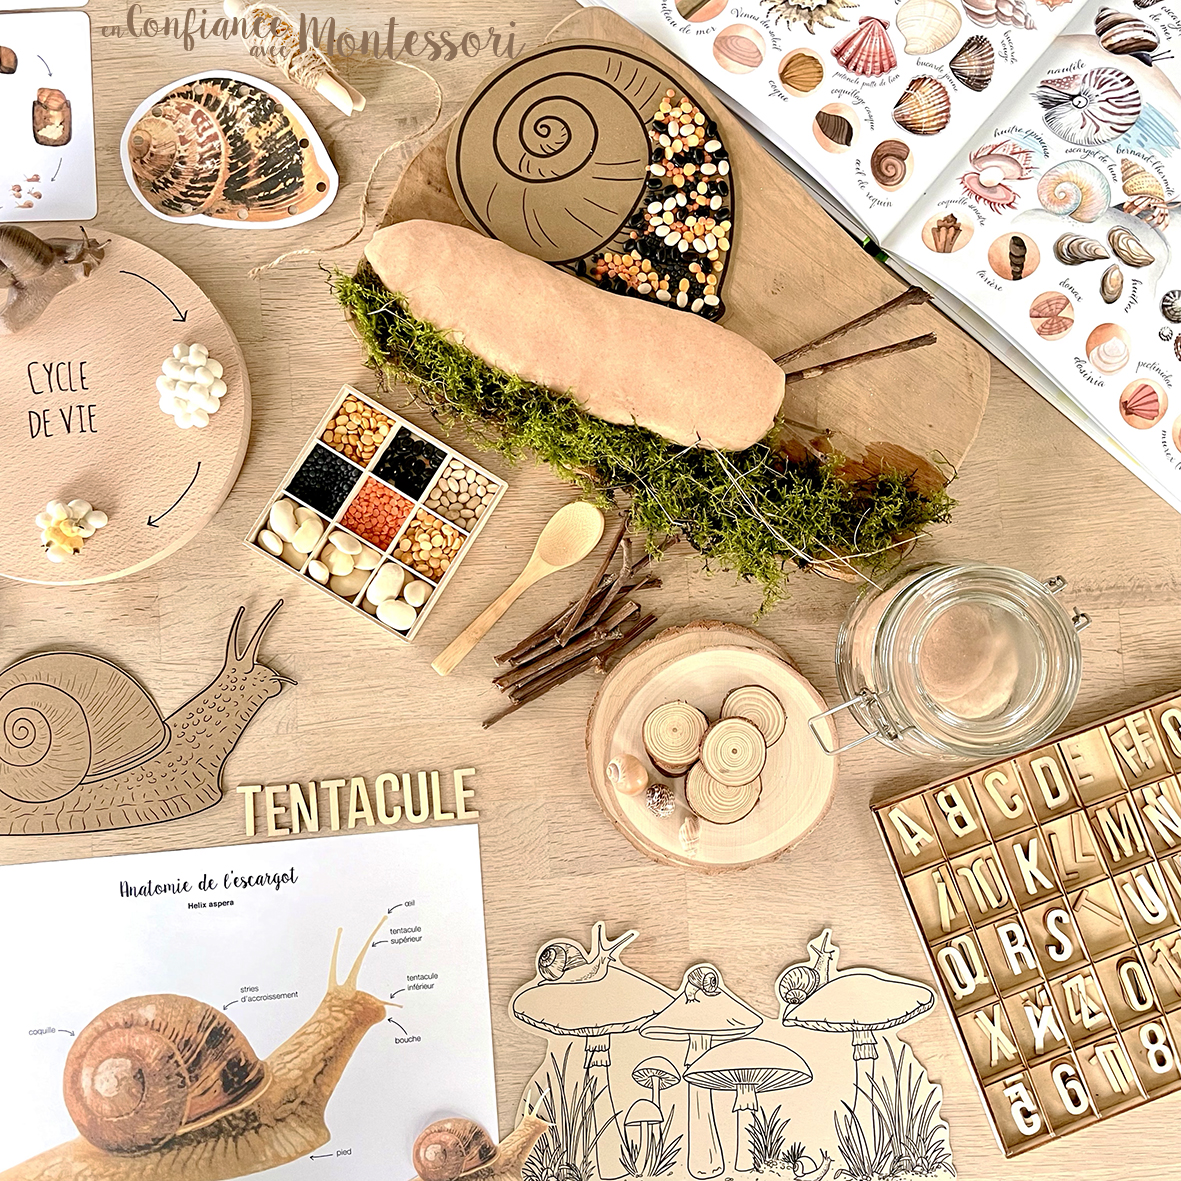 Pack de matériels à imprimer sur le thème de l'escargot inspirés des pédagogies Montessori et Mason. Pour les enfants de 3 à 7 ans.